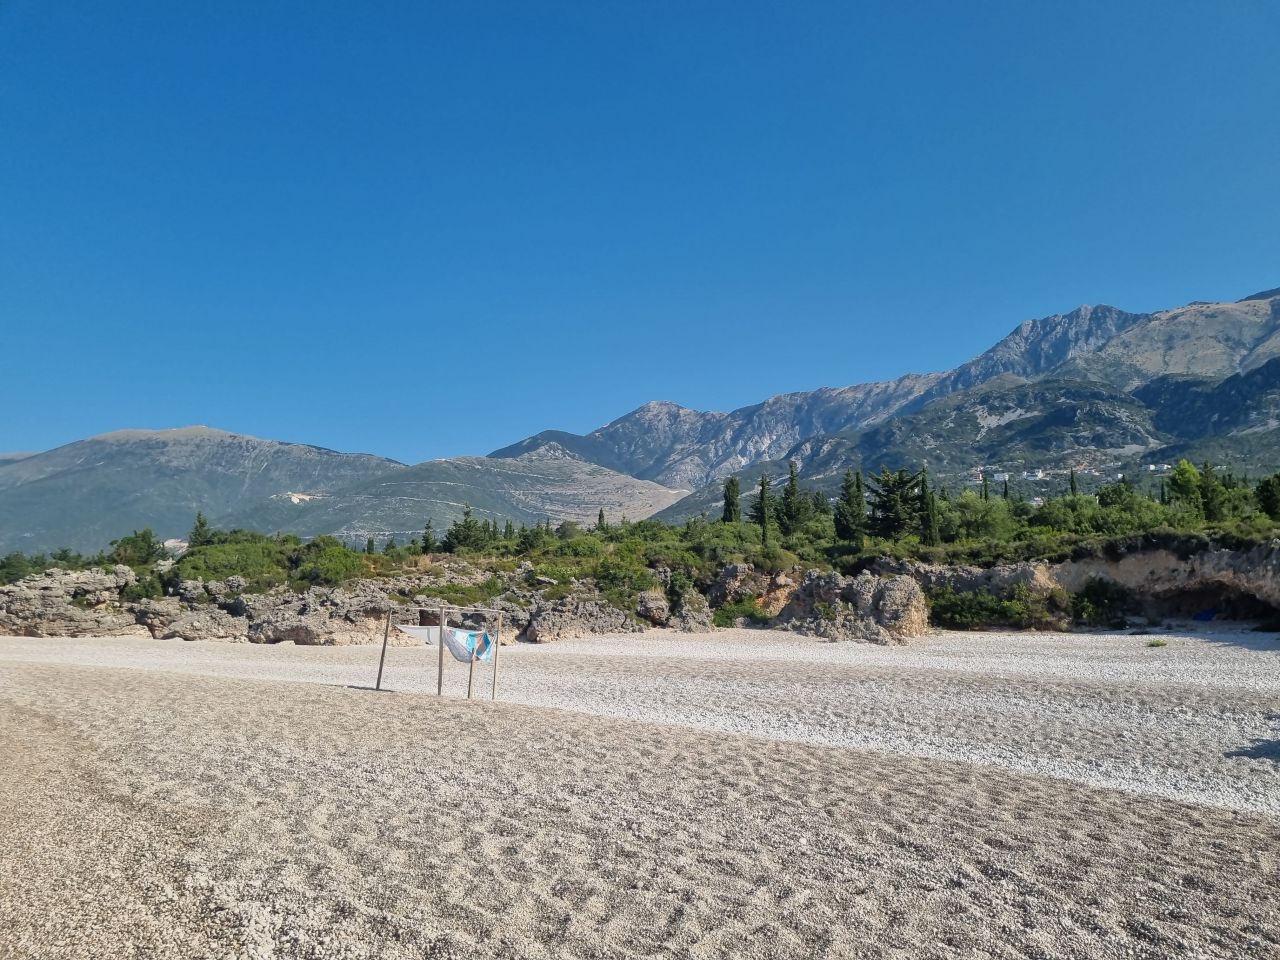 Wohnung Zum Verkauf An Der Albanischen Riviera Green Coast